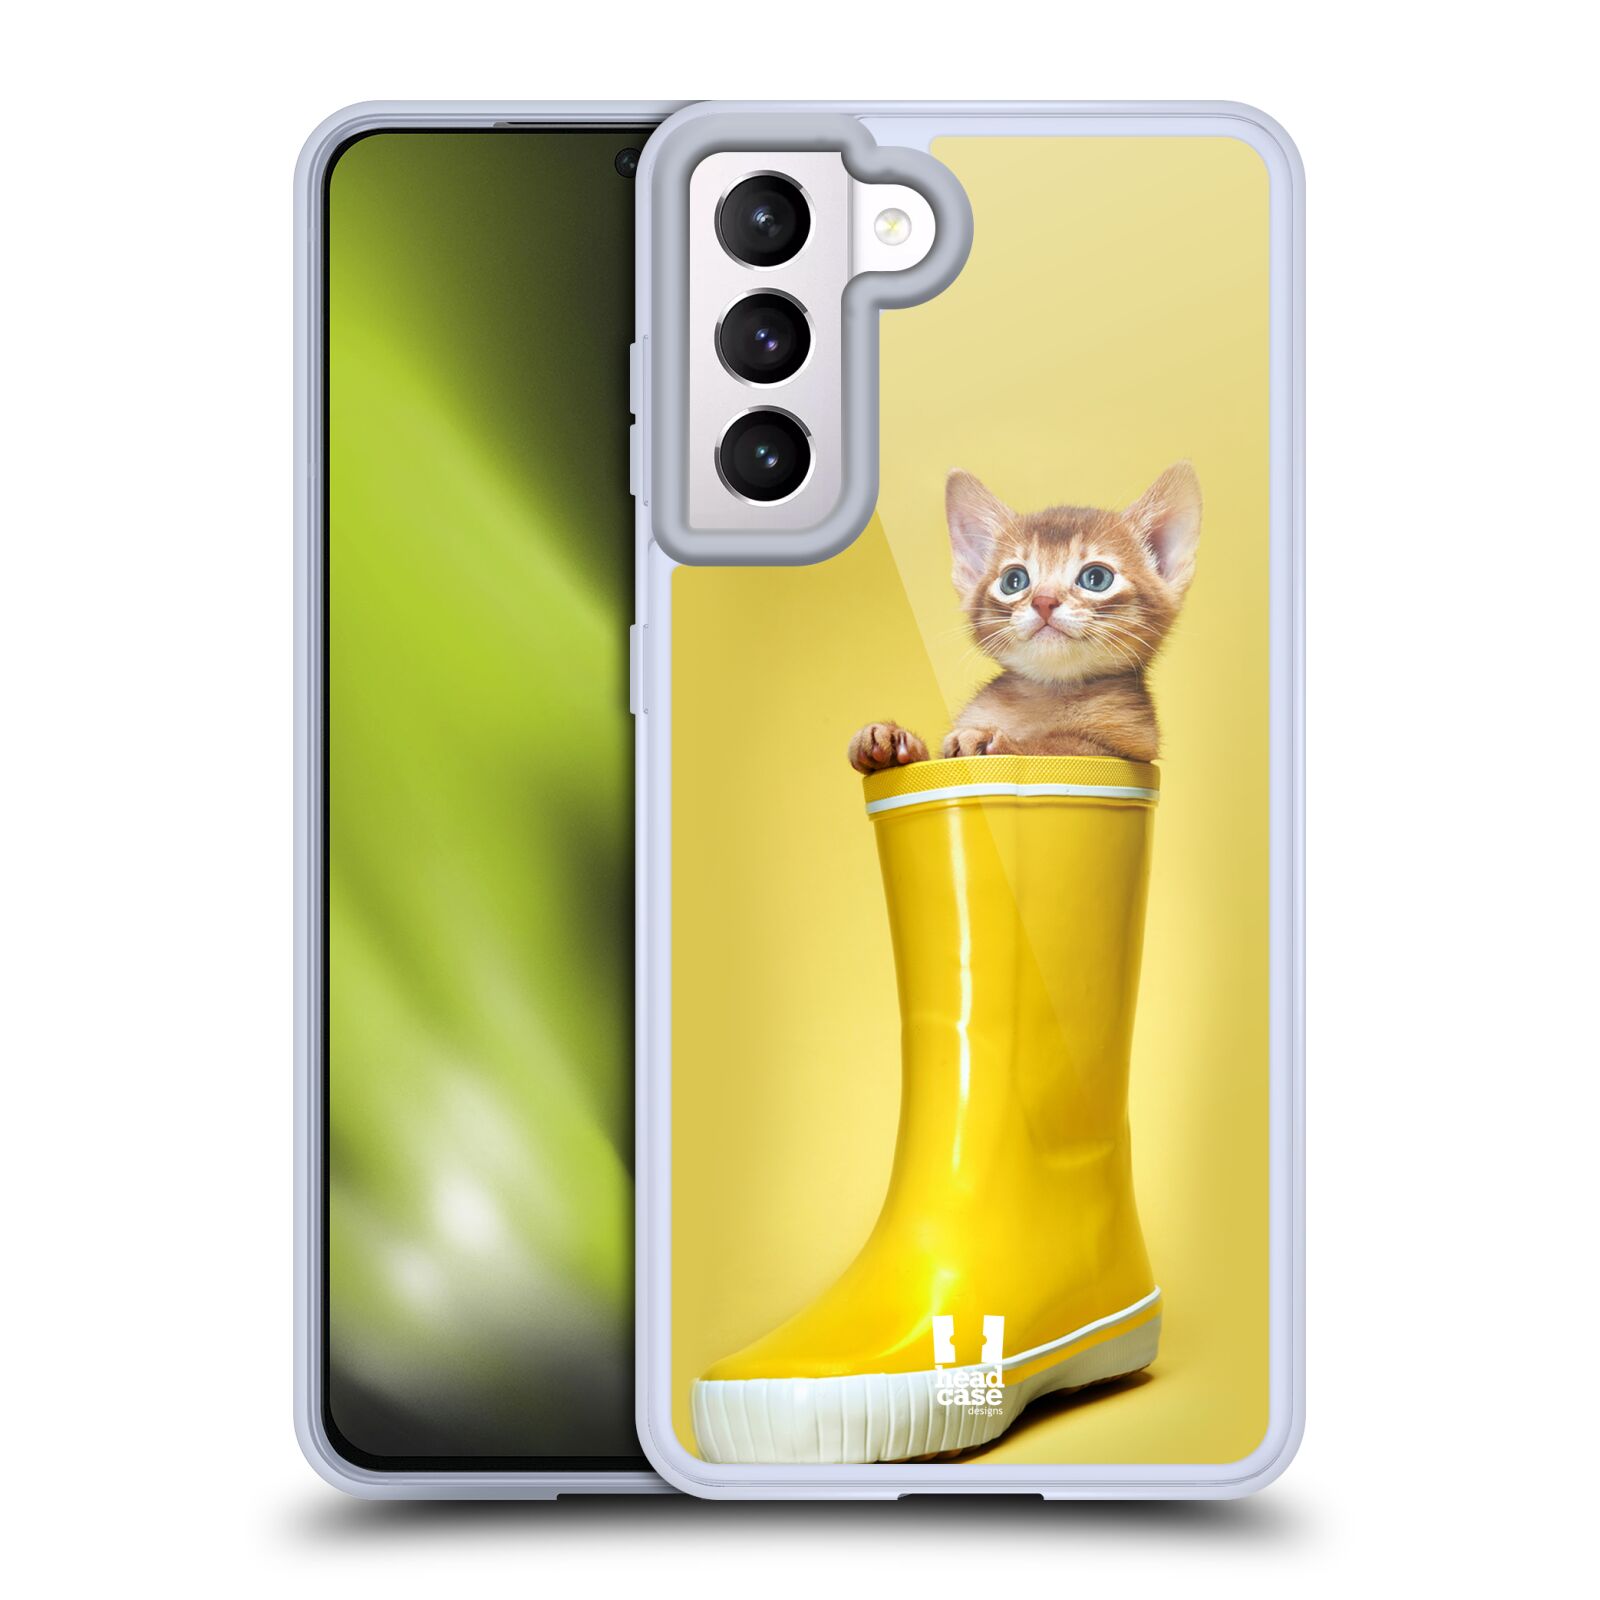 Plastový obal HEAD CASE na mobil Samsung Galaxy S21 5G vzor Legrační zvířátka kotě v botě žlutá